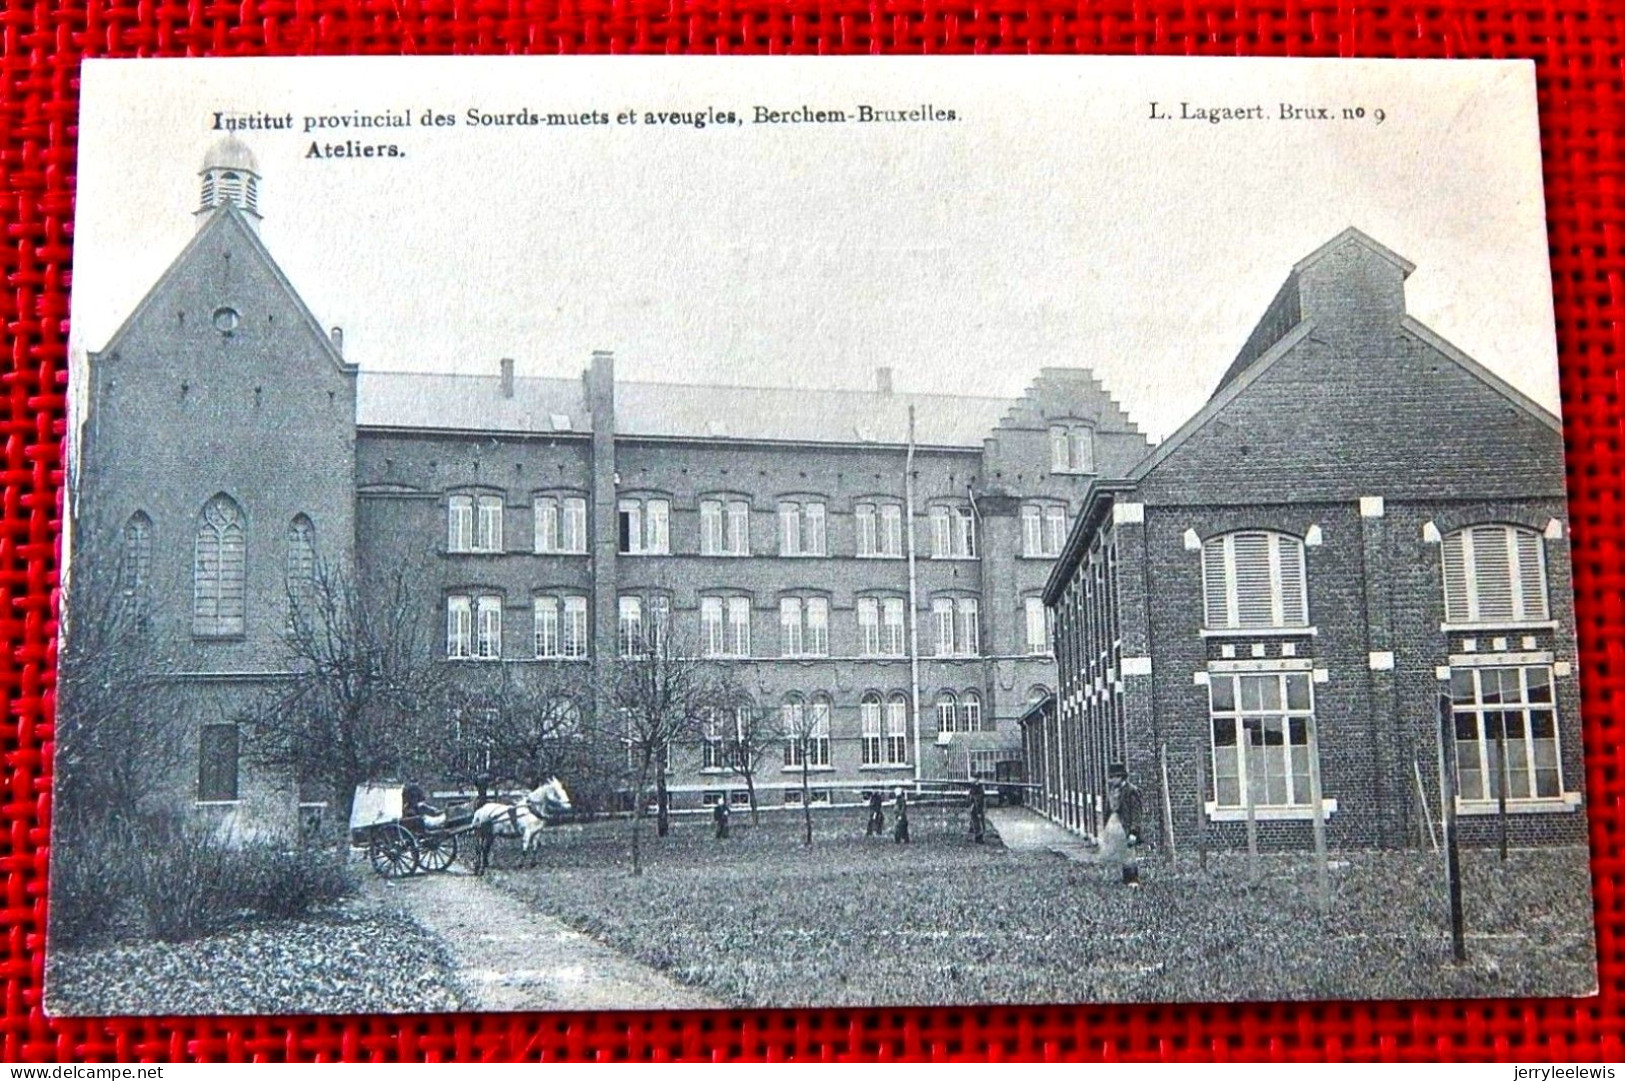 BERCHEM-Ste-AGATHE  -  Institut Provincial Des Sourds-Muets Et Aveugles  -  Ateliers - Berchem-Ste-Agathe - St-Agatha-Berchem